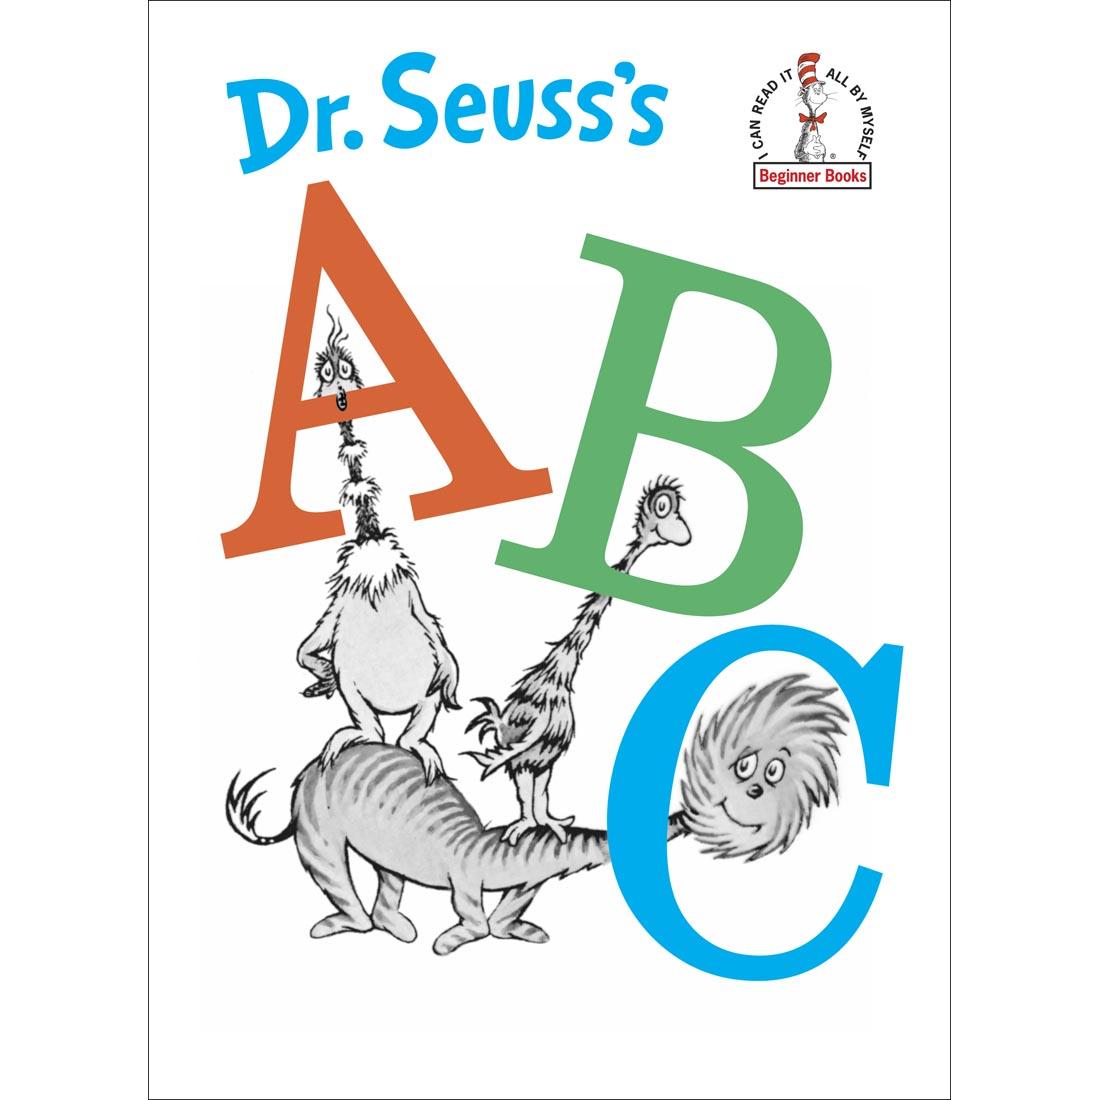 Dr. Seuss's ABC Book